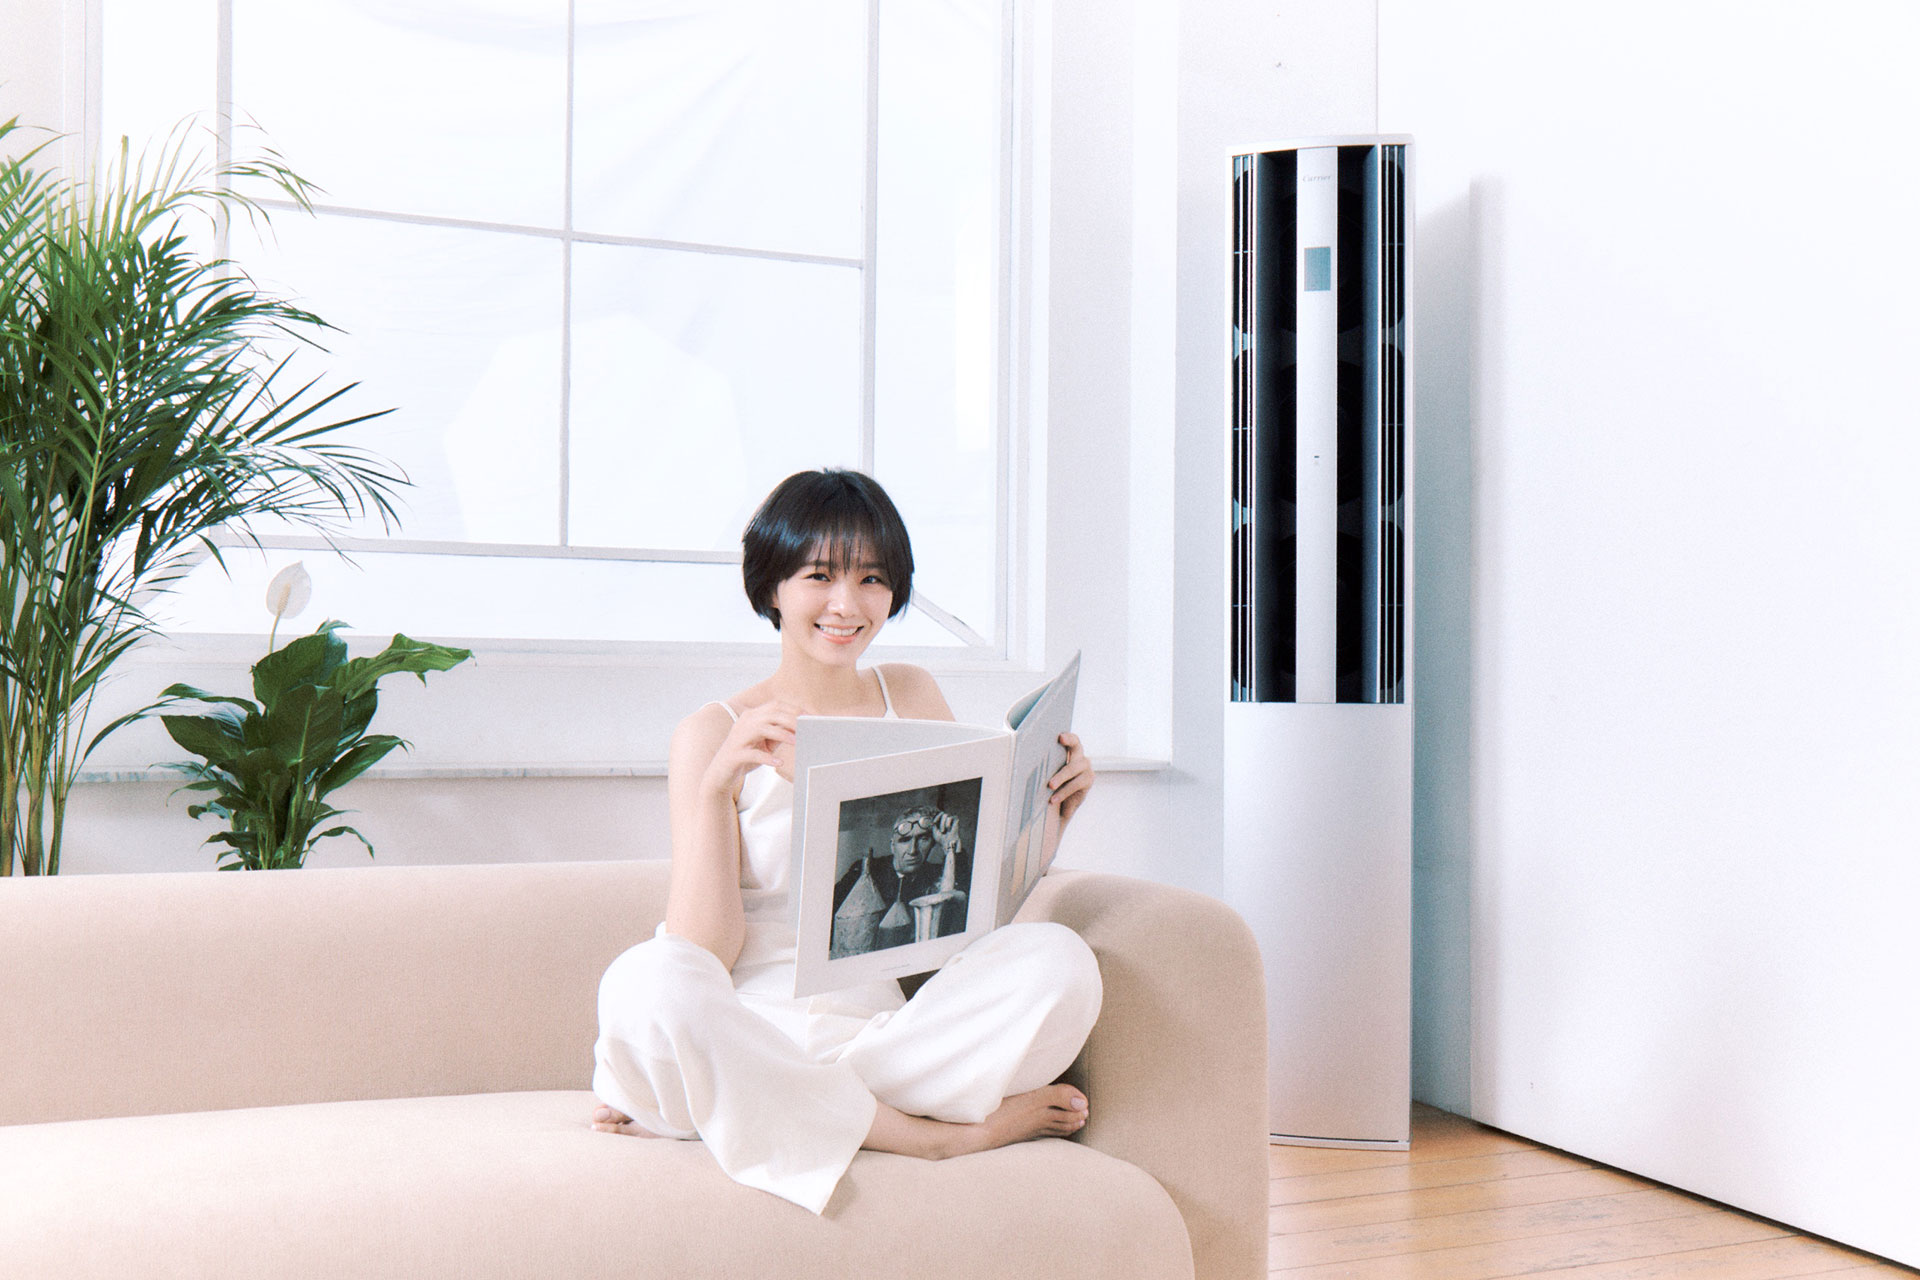 캐리어 앰베서더 박규영이 실내공기를 쾌적하게 순환시켜주는 캐리어가 있는공간에서 쇼파에 앉아 책을 읽으며 화사하게 웃고있다.